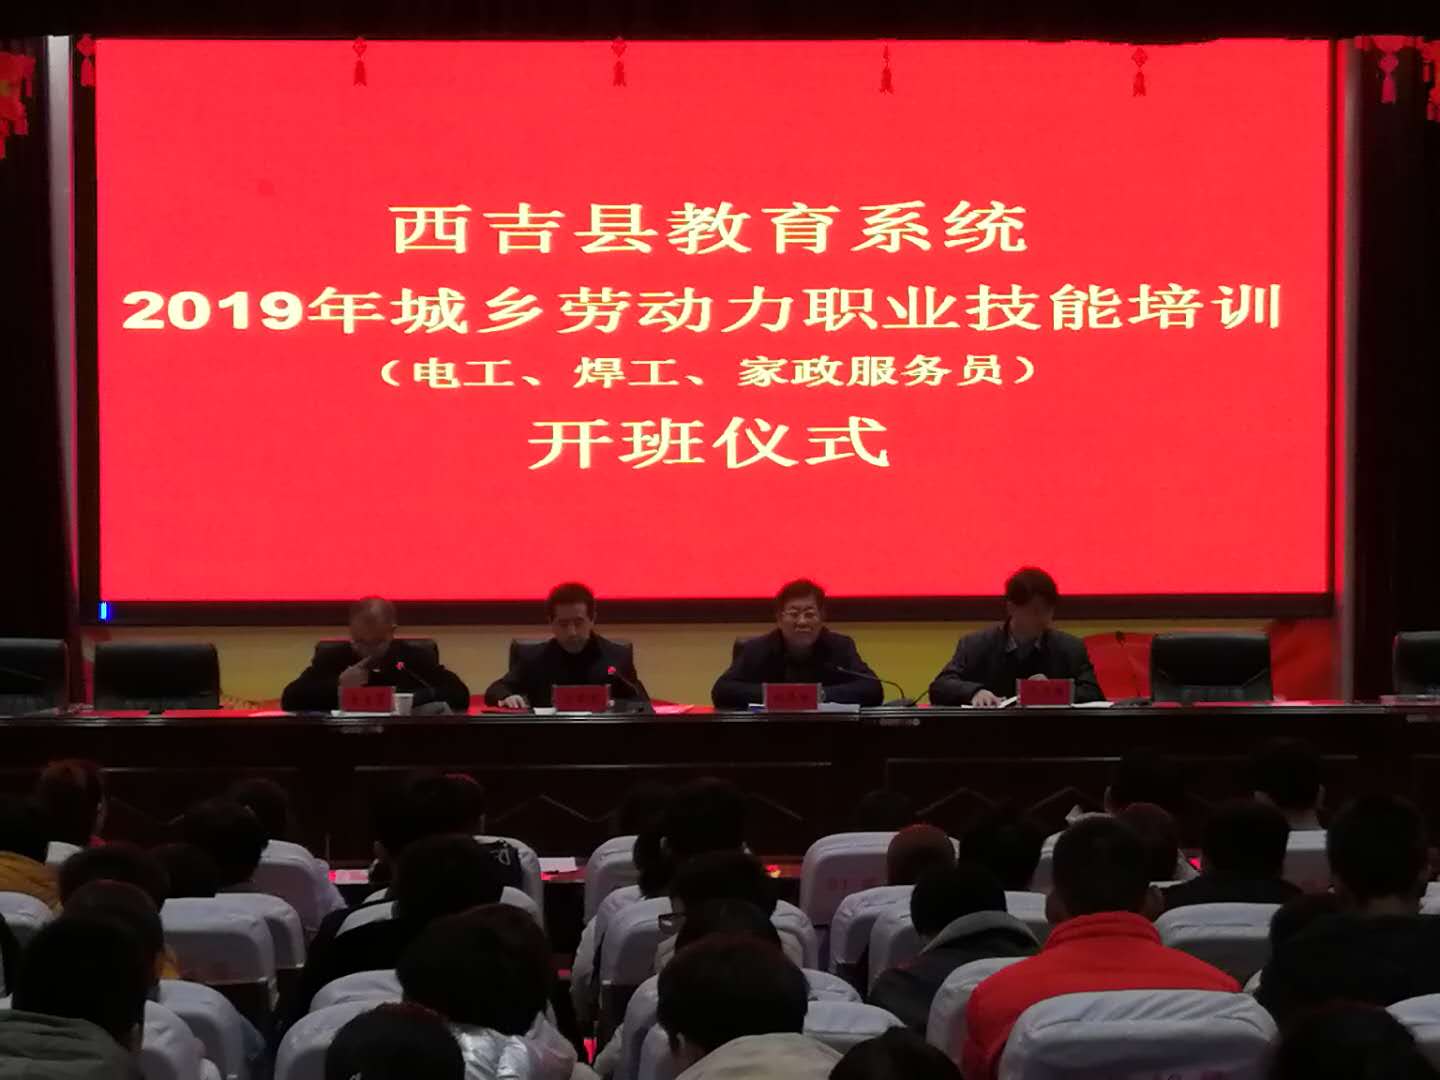 西吉县教育系统2019年城乡劳动力 职业技能培训正式开班